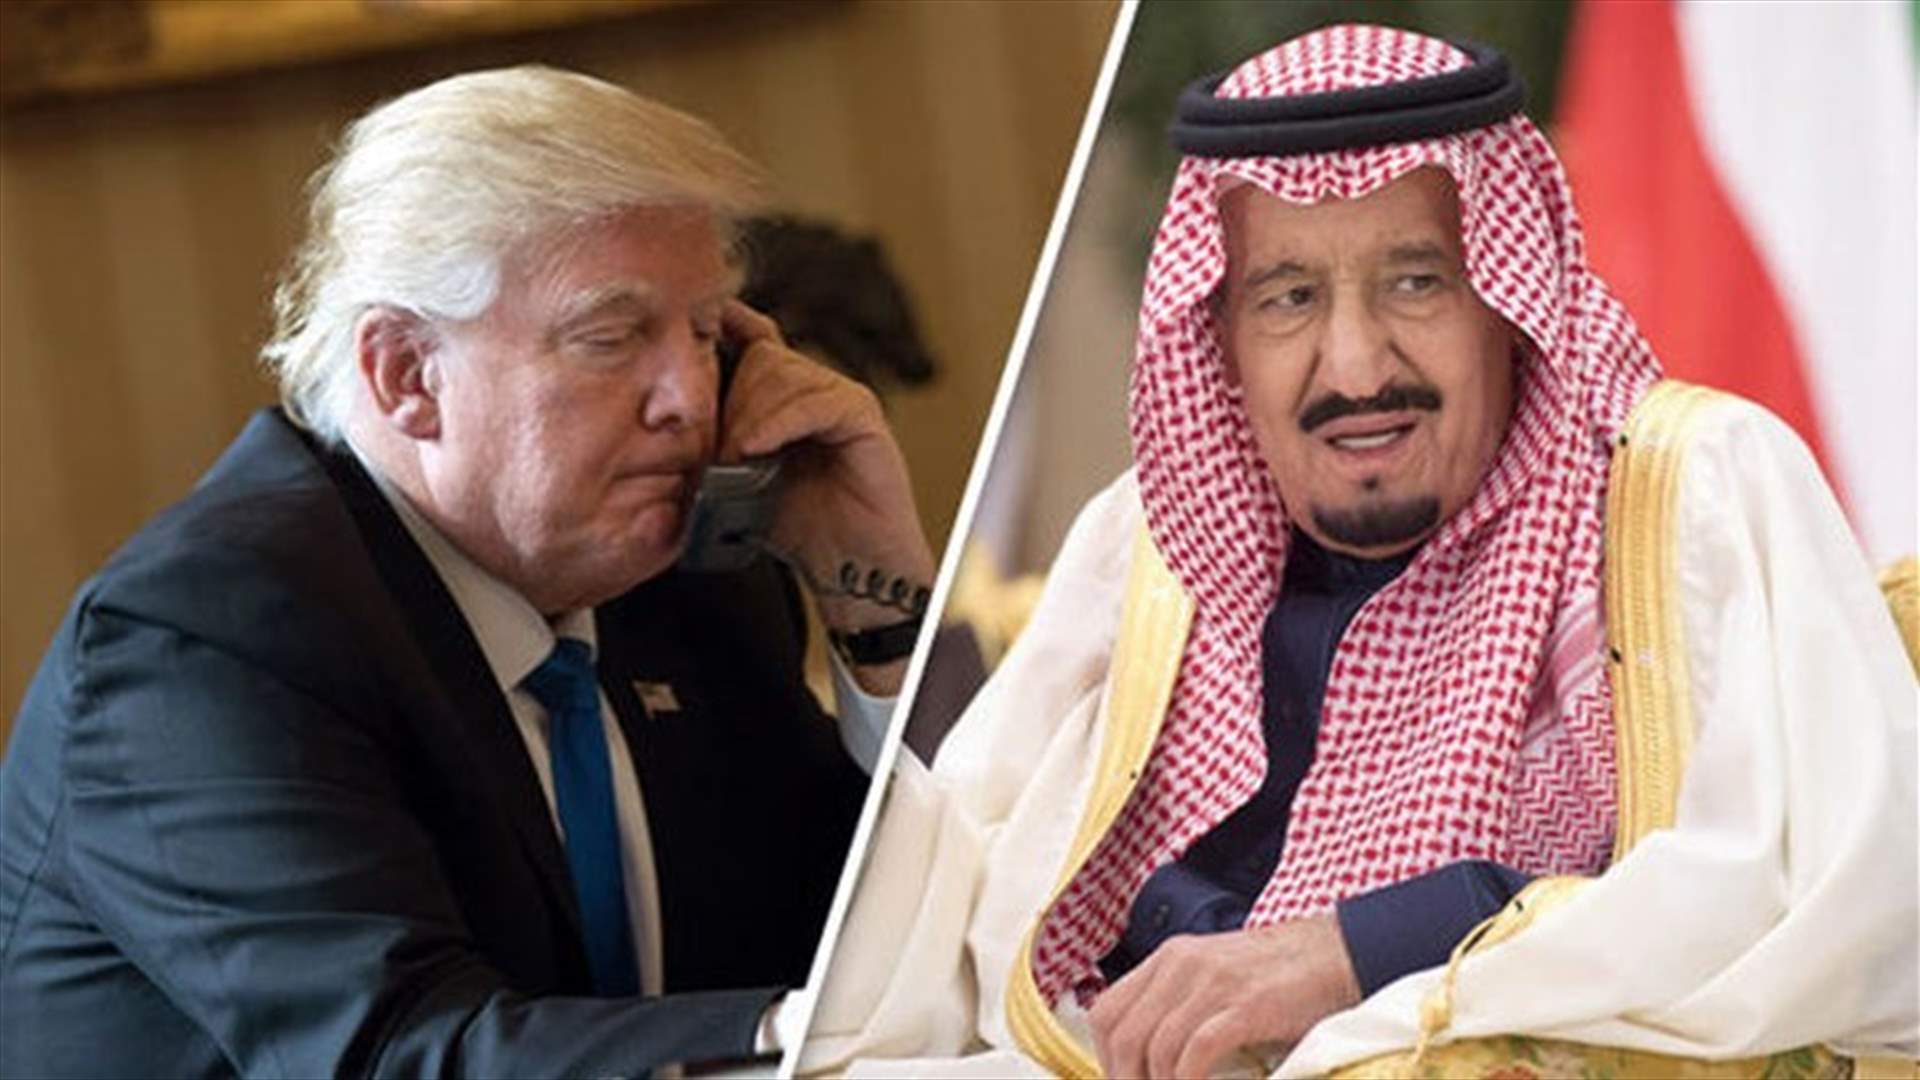 Trump says &#39;rogue killers&#39; may be behind Khashoggi disappearance